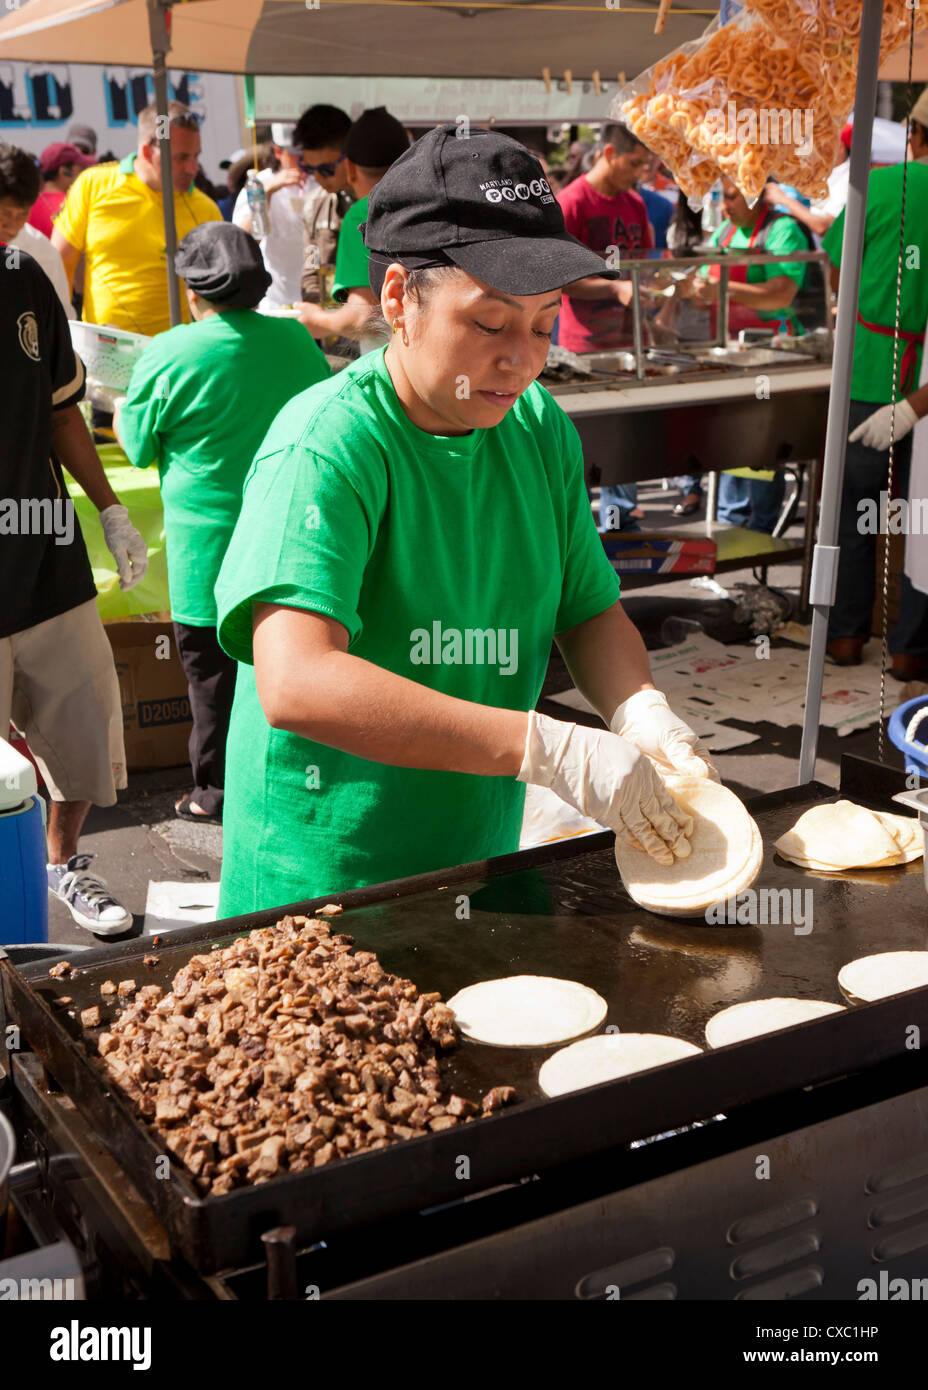 Cuisson d'une femme à un festival en plein air les tortillas - USA Banque D'Images